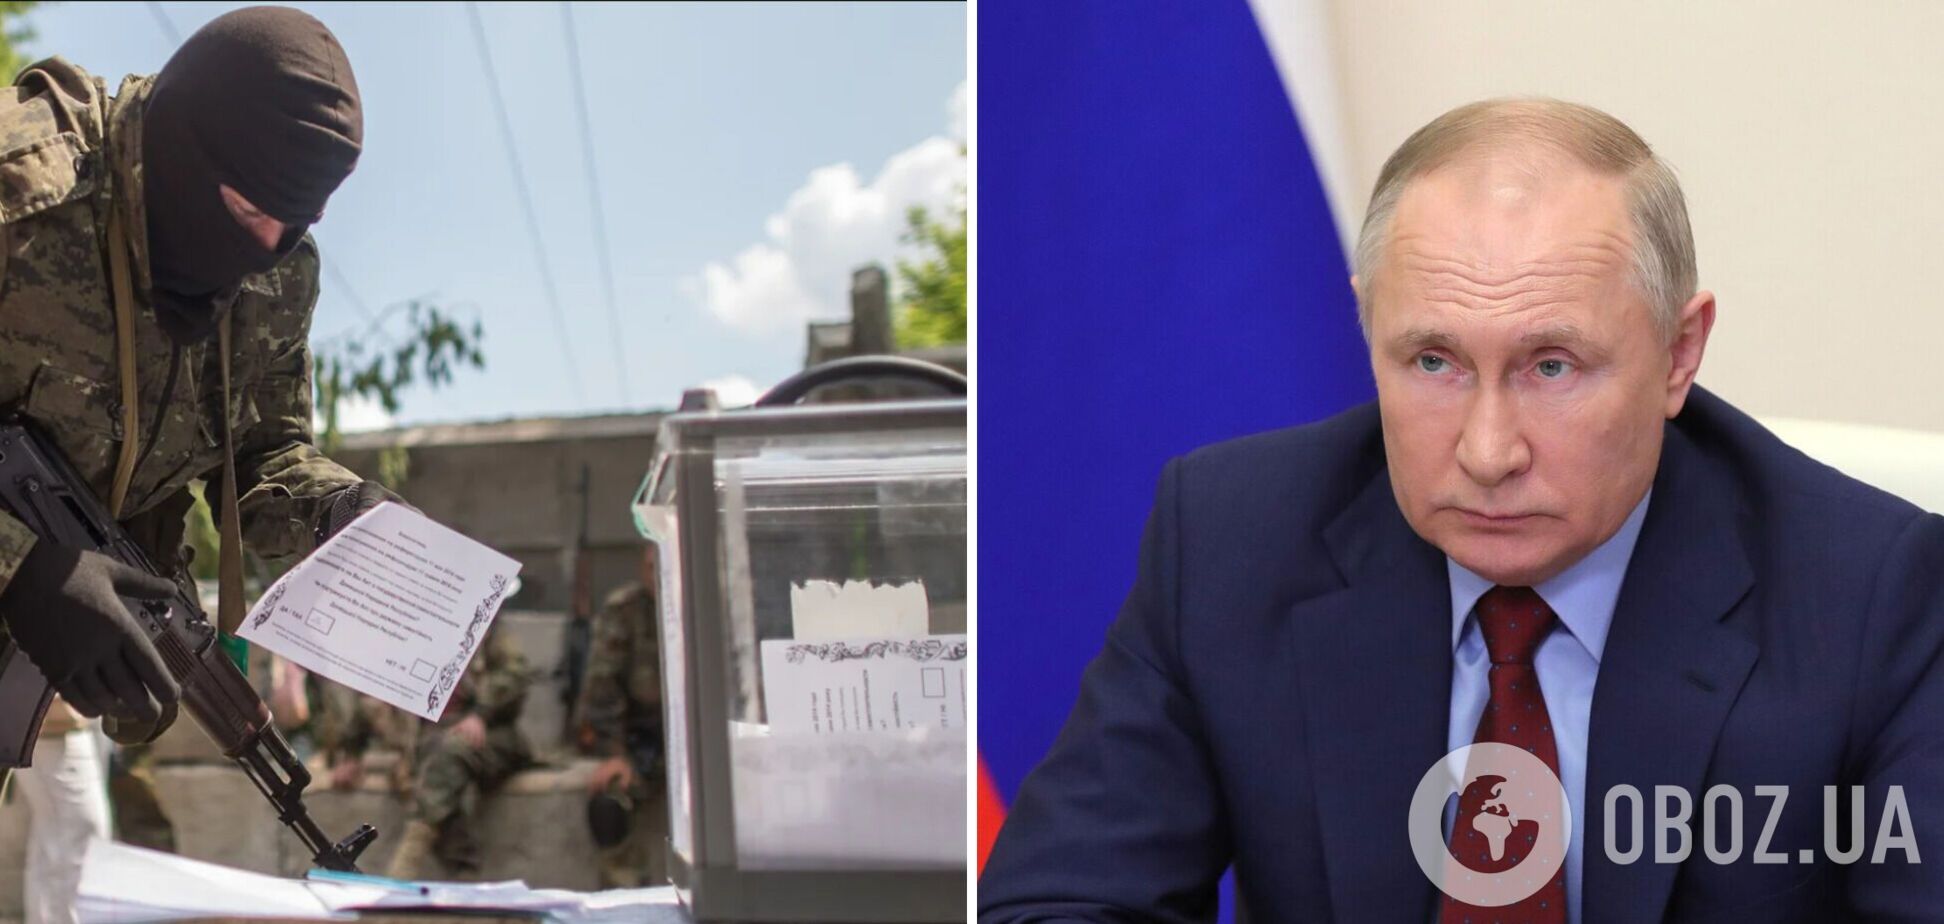 Россия может устроить 'референдум' на захваченных территориях Украины в августе: СМИ узнали о подготовке